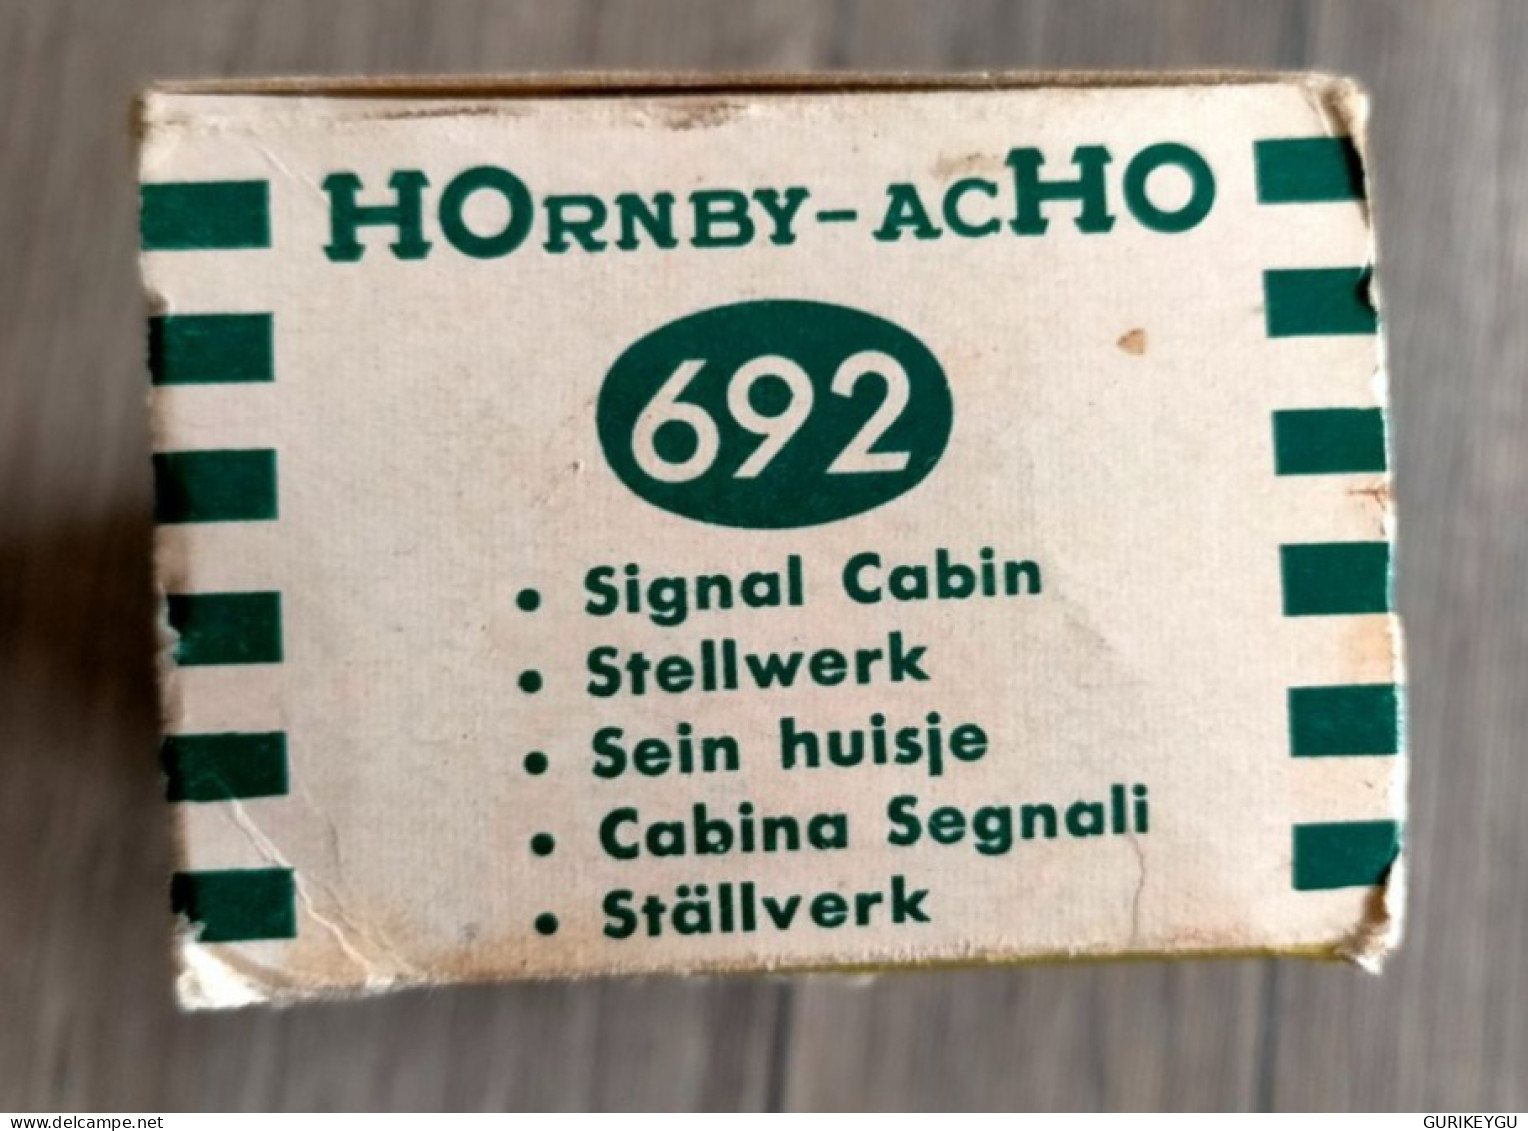 HOrnby-ACHO  réf 692 made in France POSTE d'aiguillage démontable MECCANO signal cabin  HO avec boite d'origine